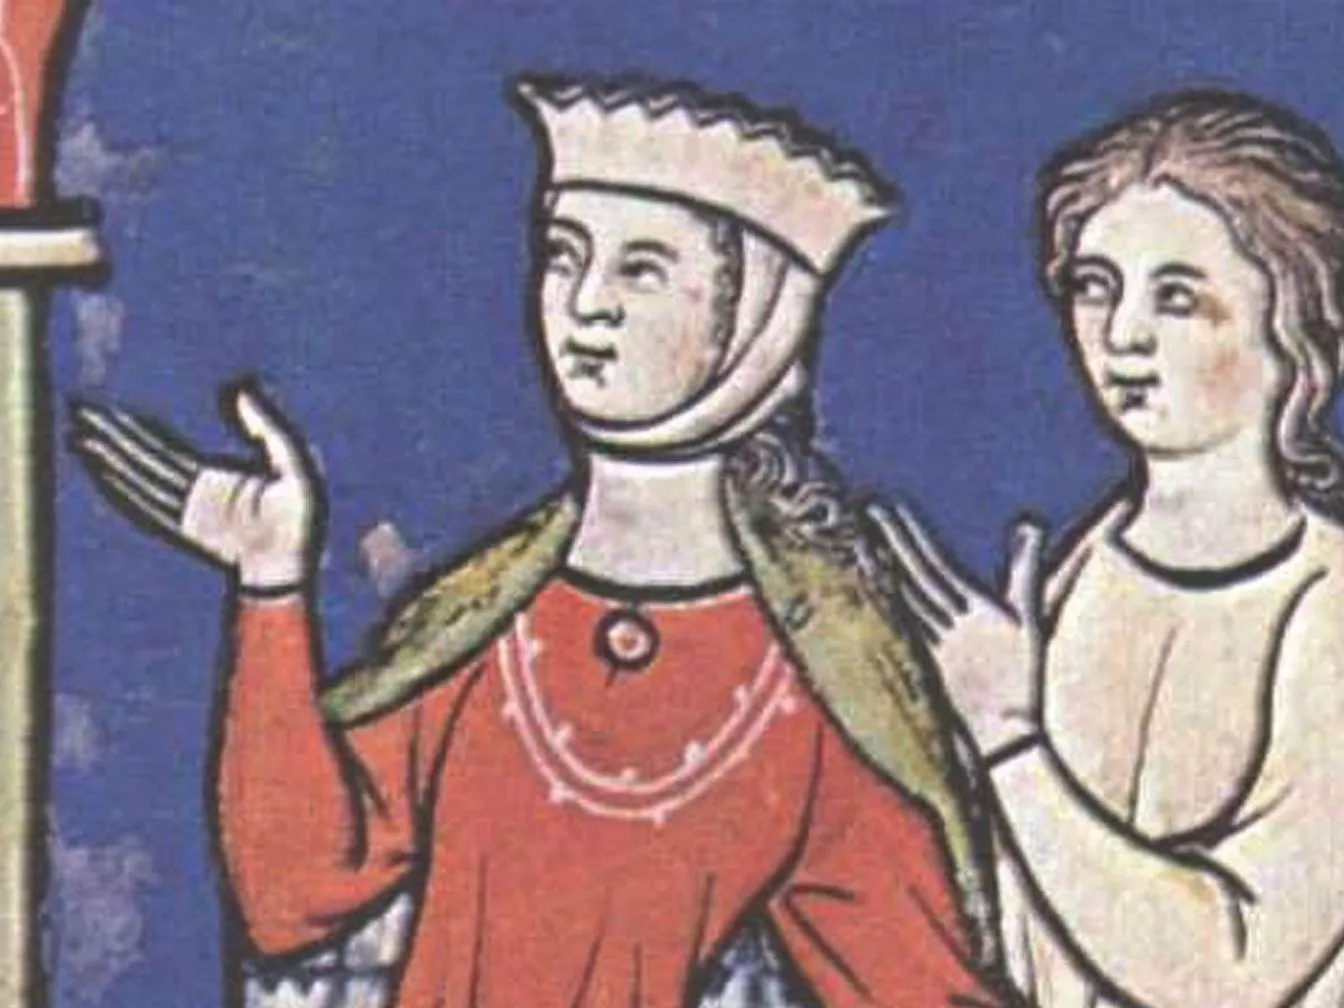 Aurembiaix d'Urgell no va deixar fills, però sí una sorpresa final: en contra del que havia acordat amb el rei, va deixar el comtat d'Urgell al seu marit